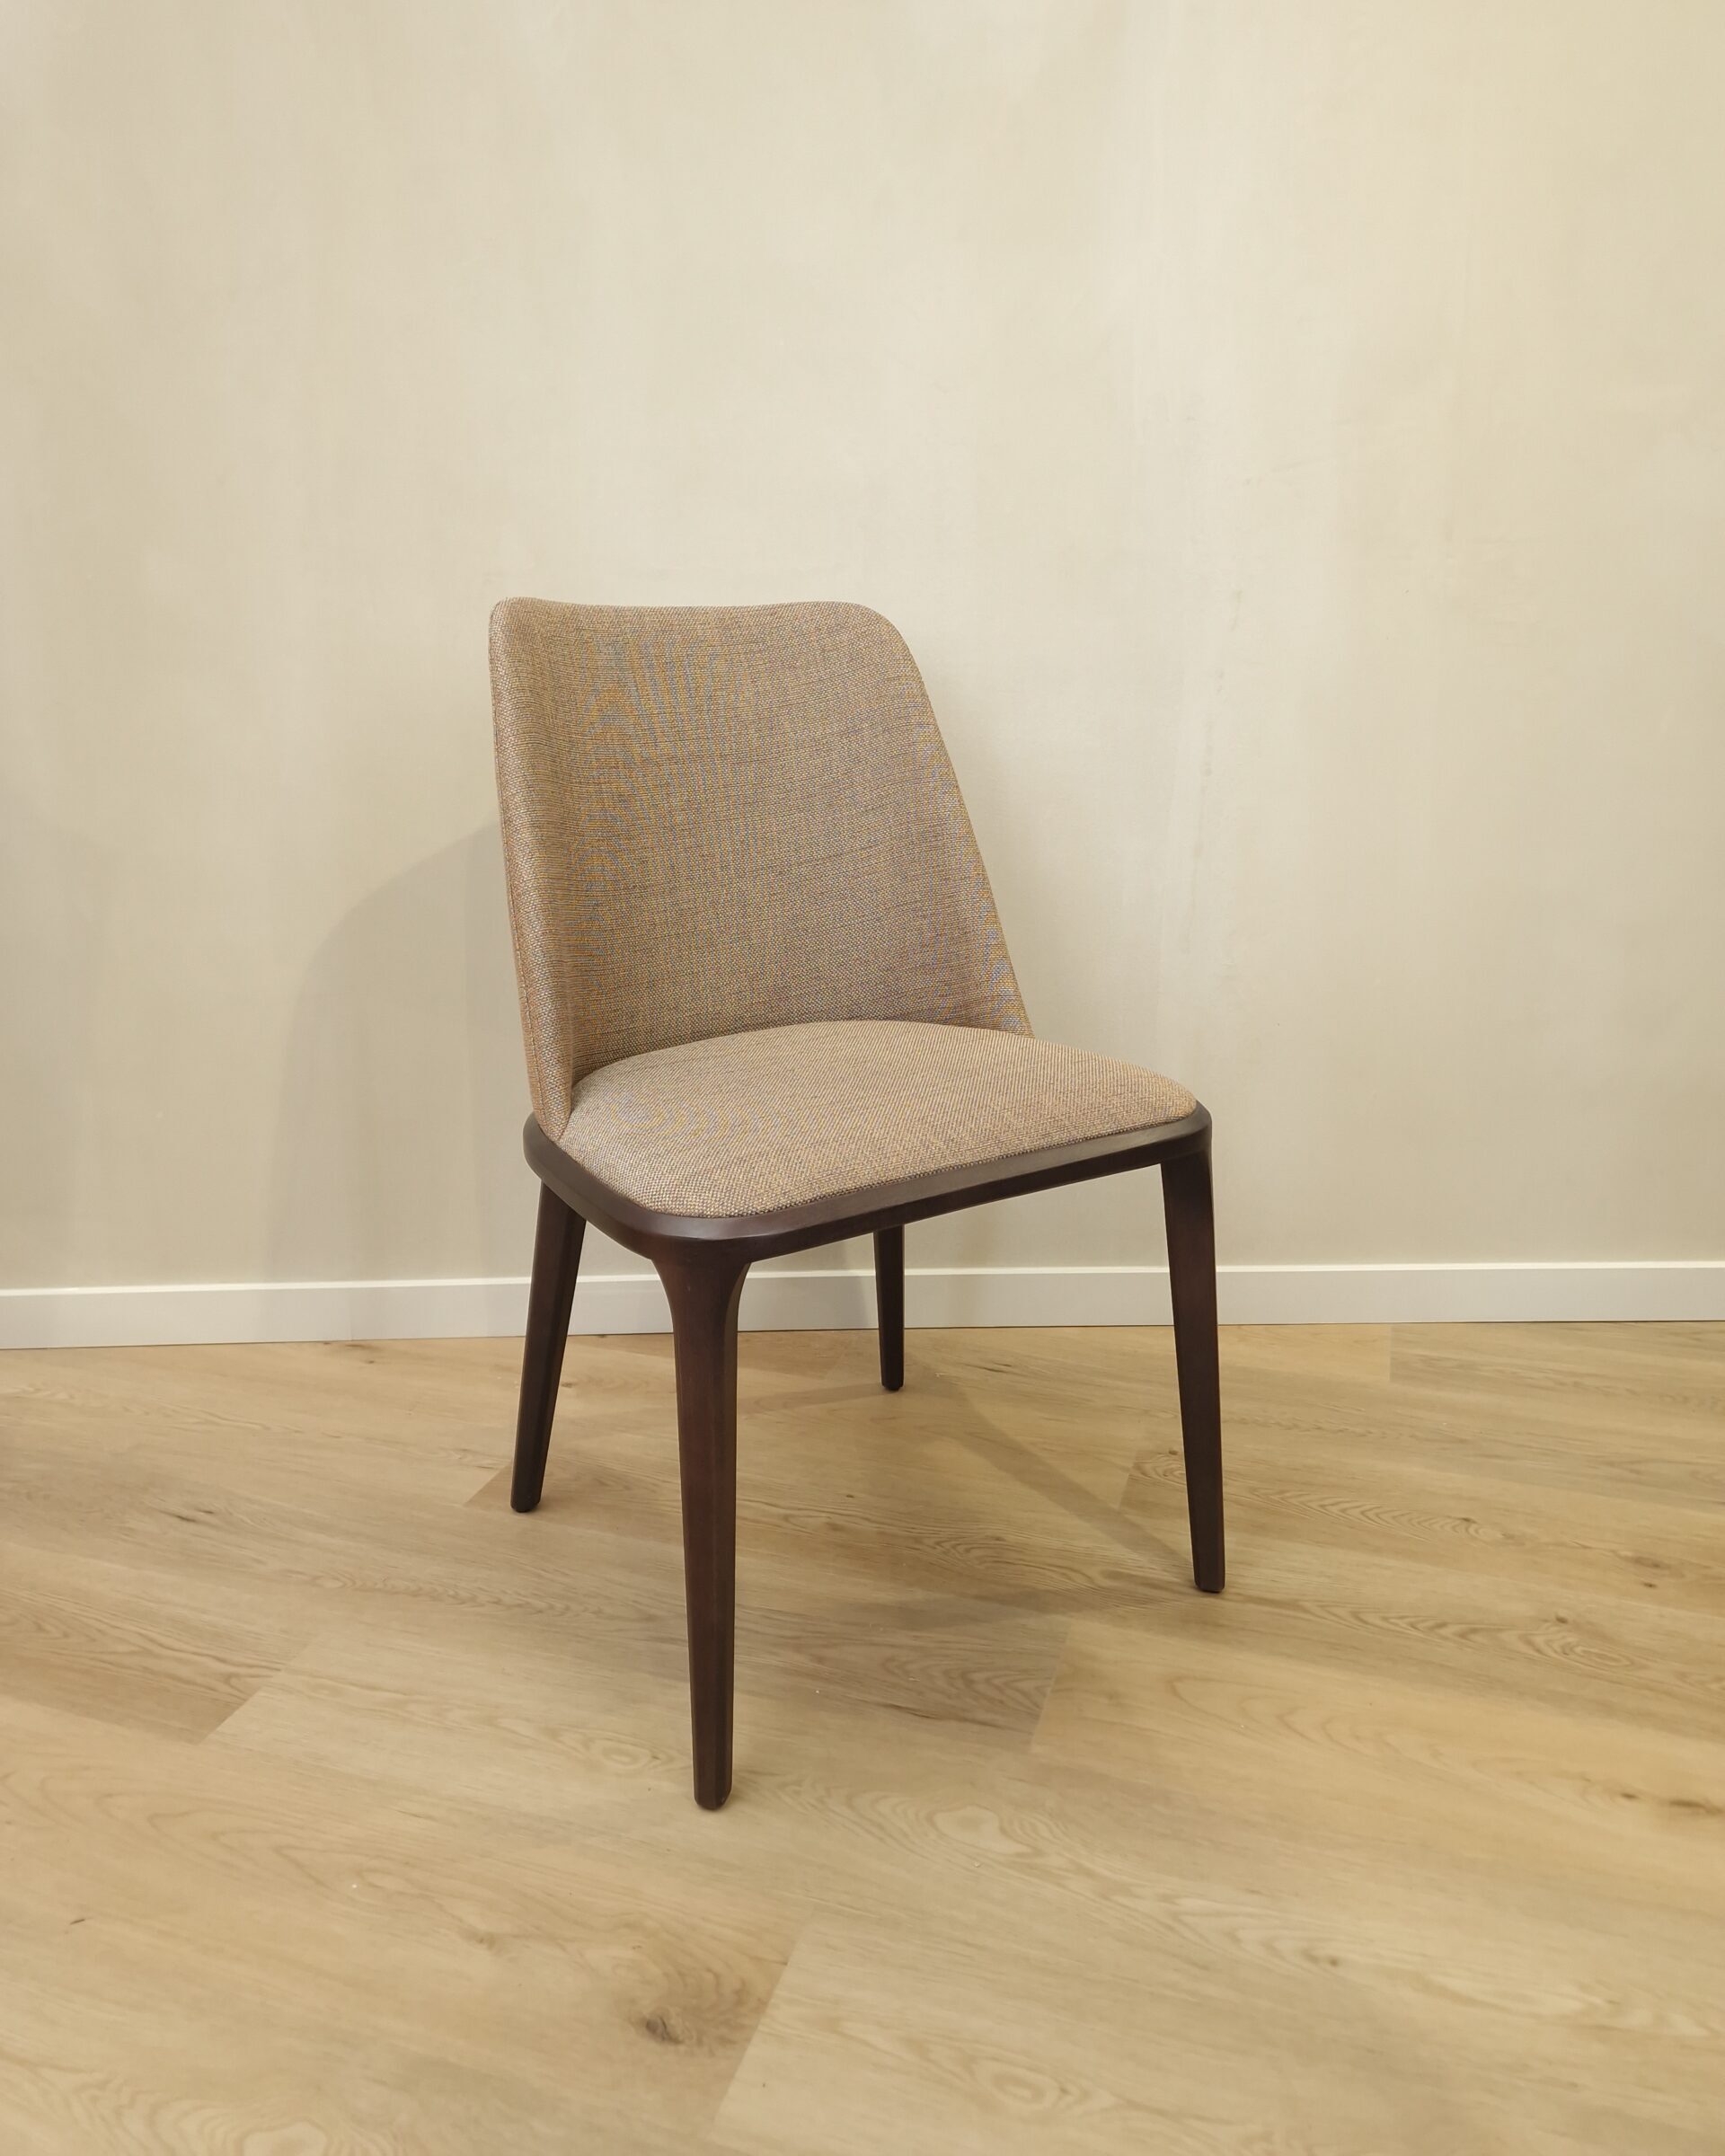 Project Evolution-Interieurwinkel-Design meubelen-Totaalprojecten-Totaalinrichting-Meubelwinkel-Hasselt Limburg-Design stoelen-2